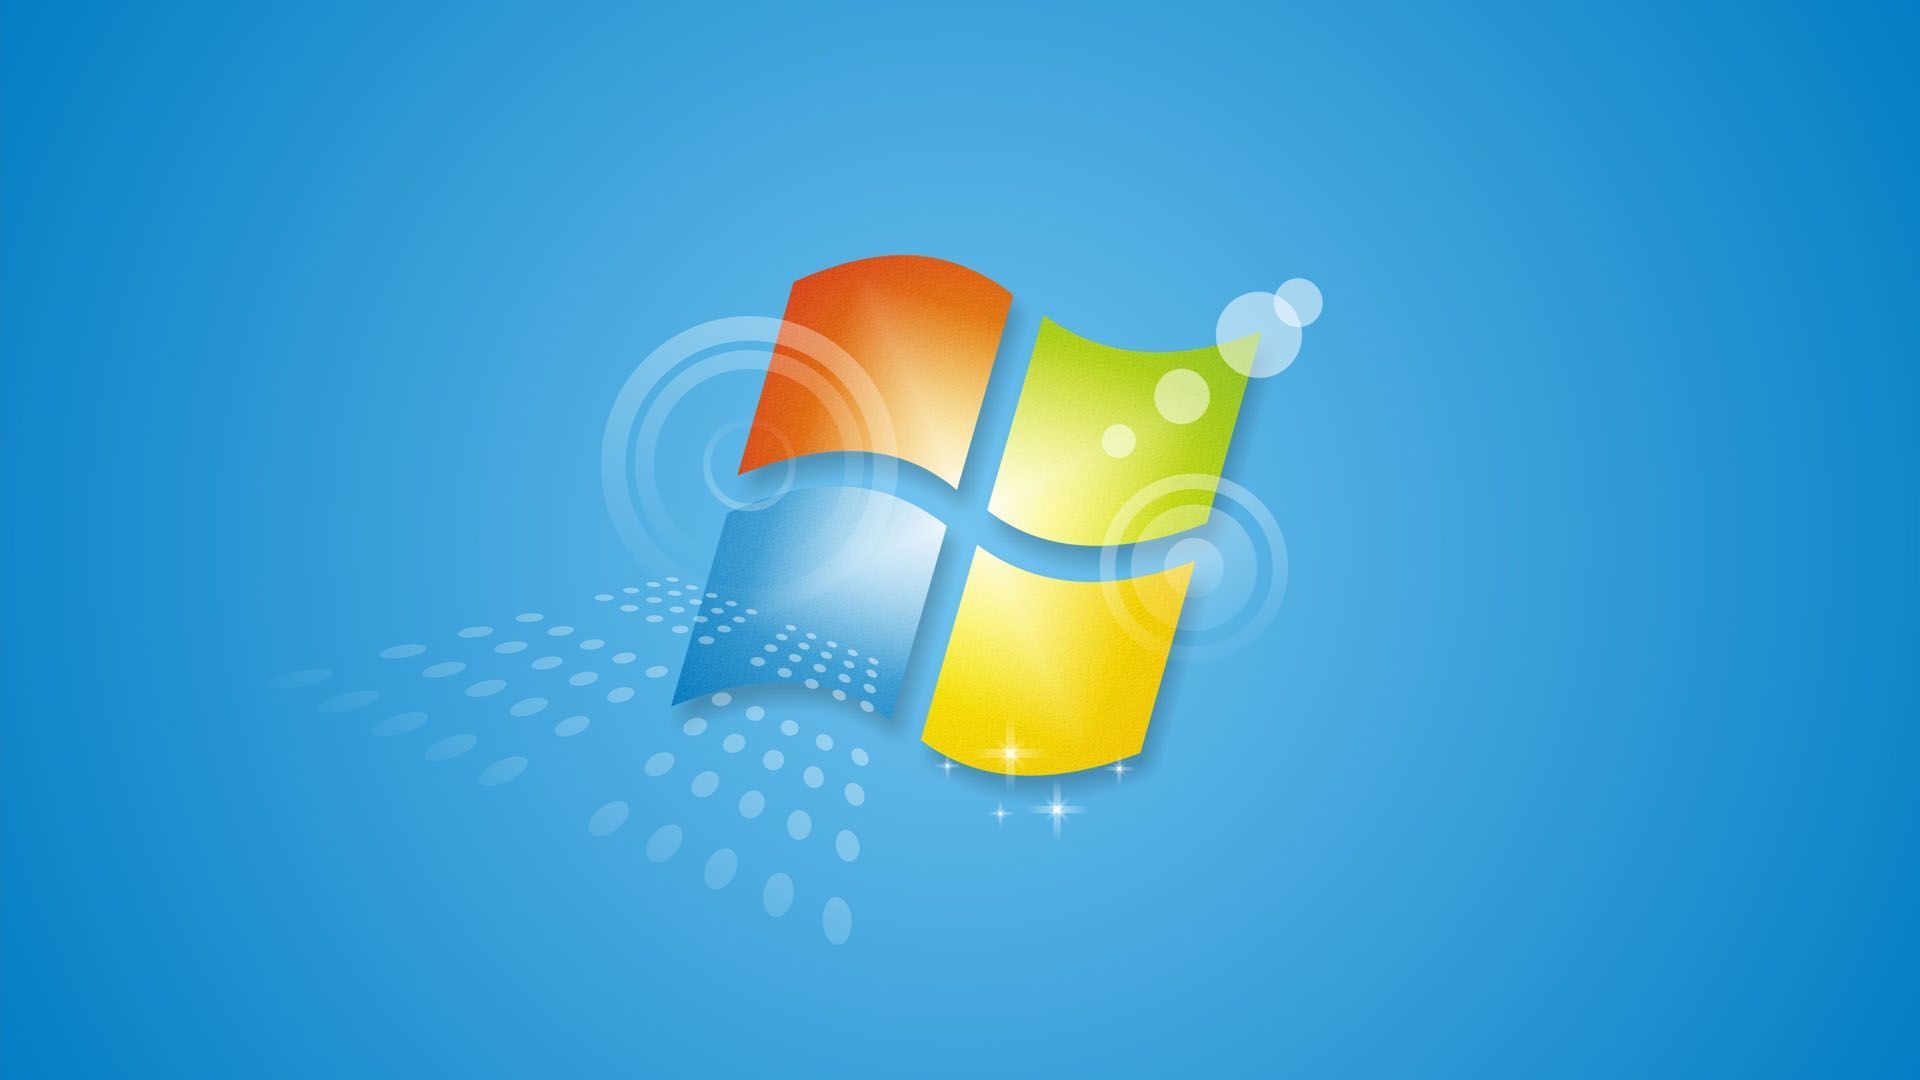 Windows 7 Cool Logo Wallpaper #17407 Wallpaper | High Resolution ...